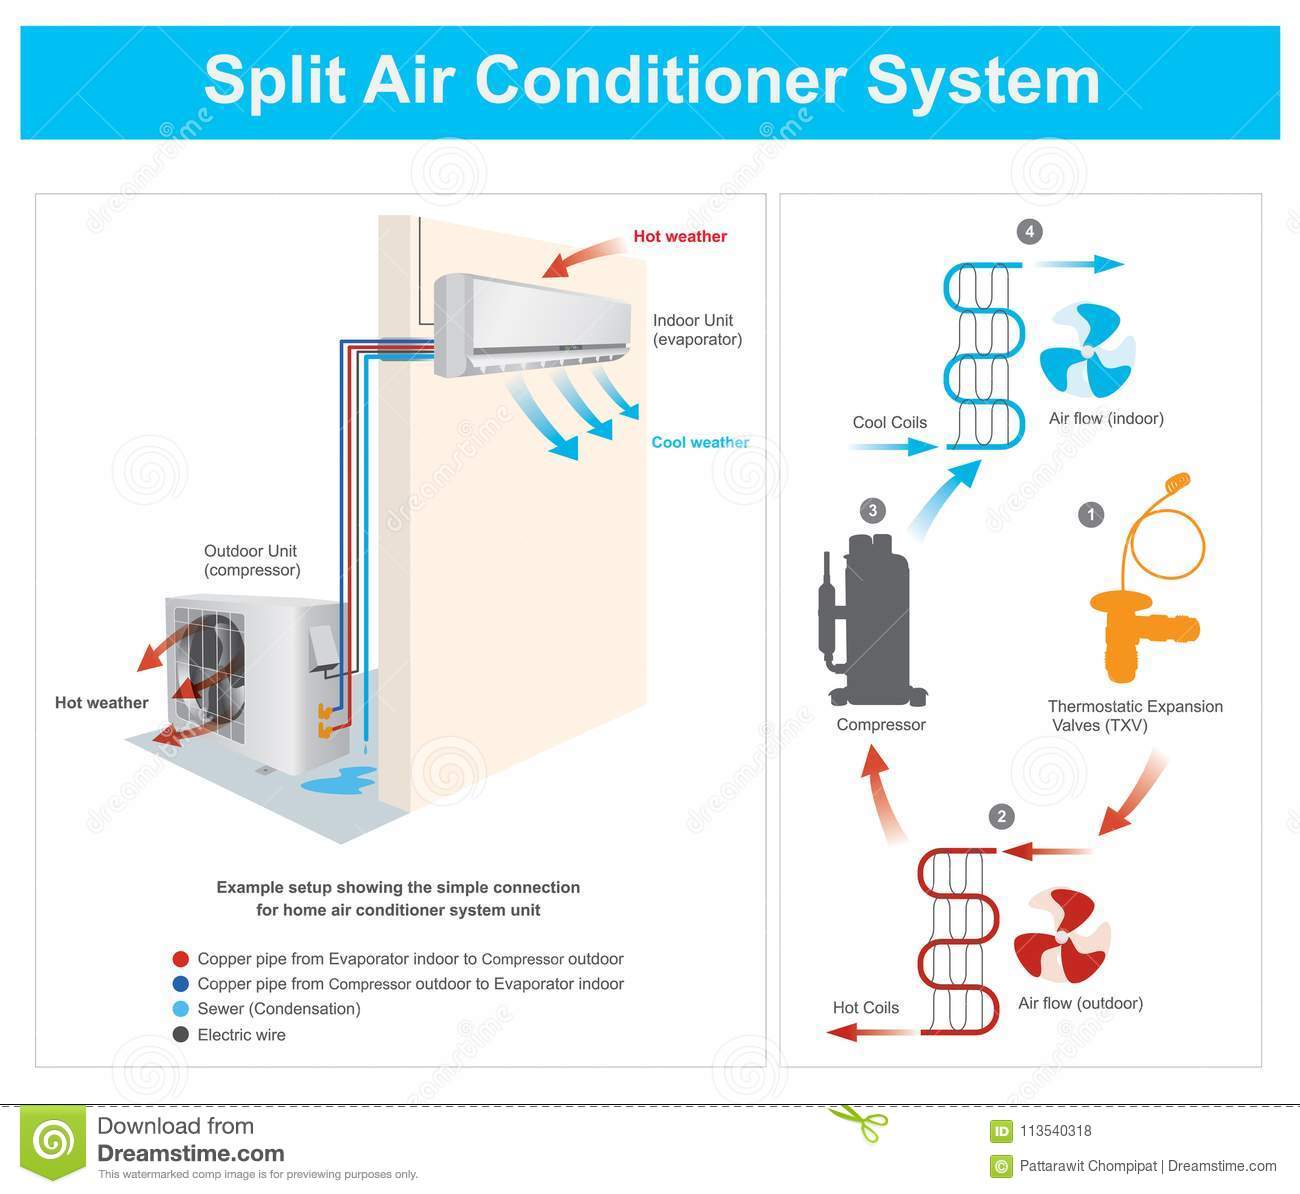 Проблемы с кондиционированием: дует воздух теплой температуры на выходе из кондиционера, слабо охлаждает или не охлаждает вовсе